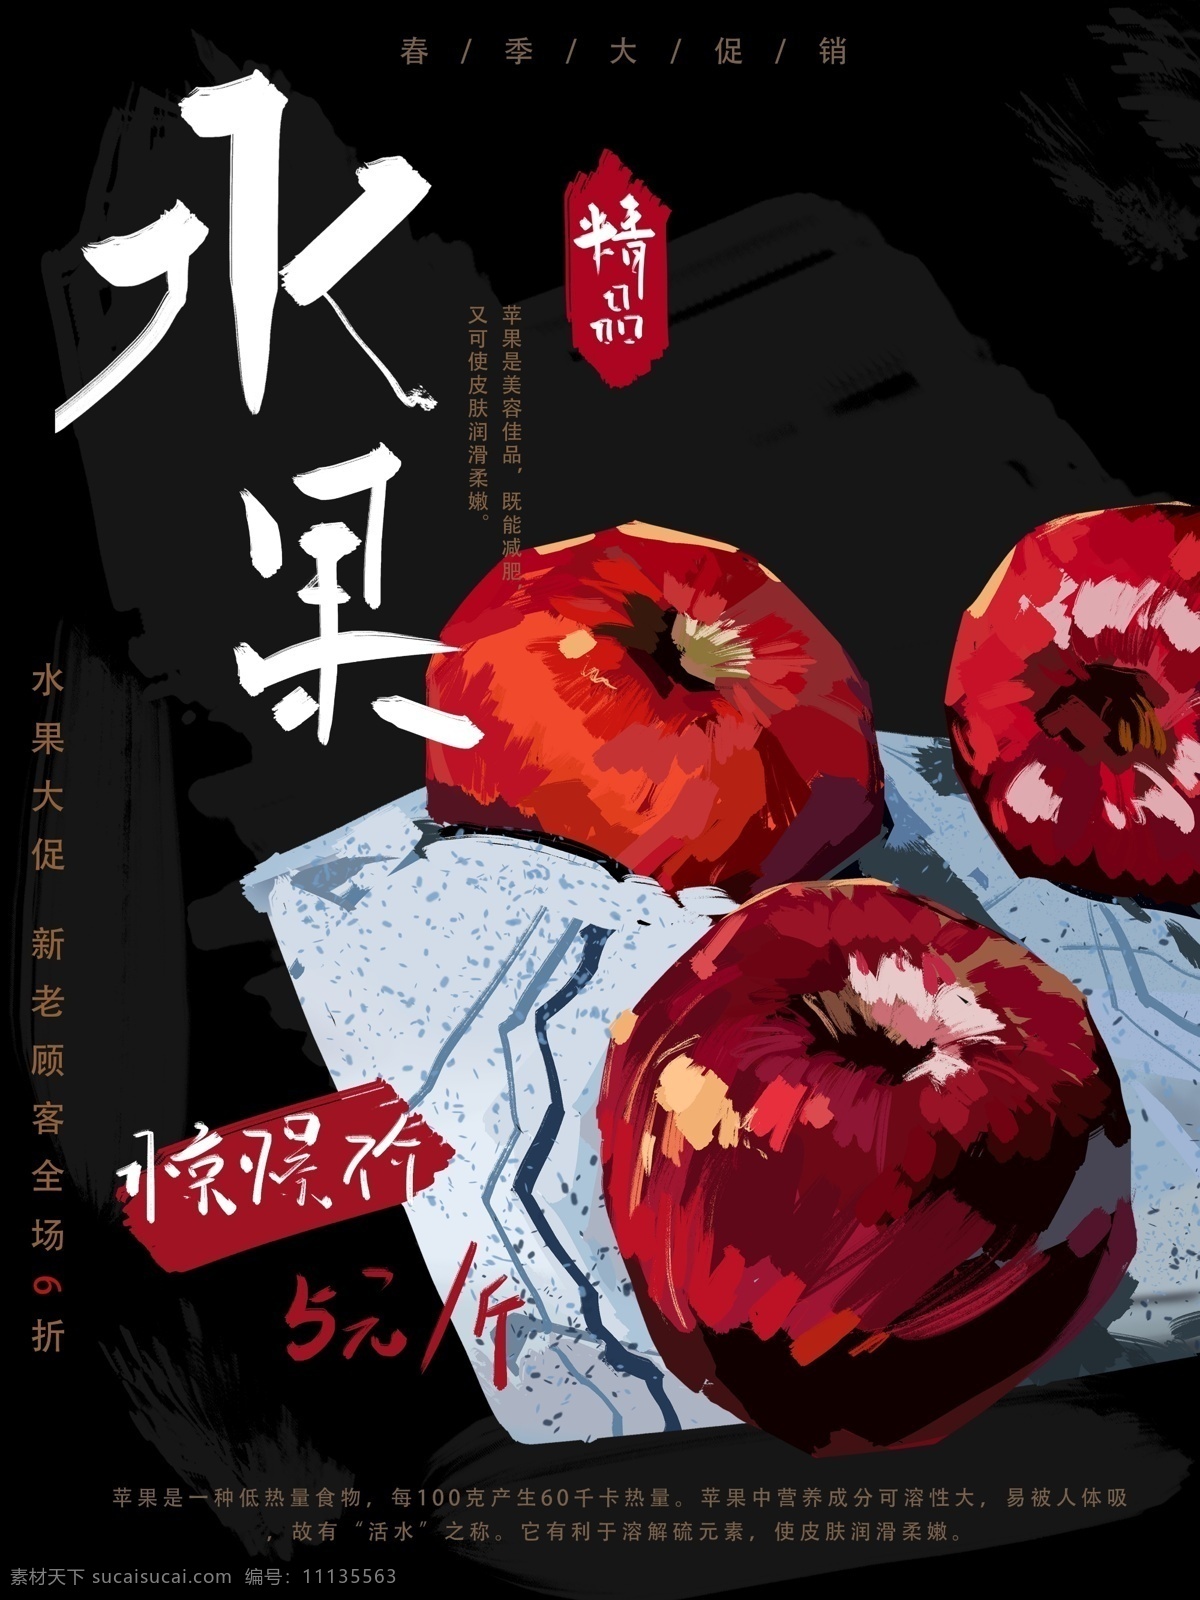 手绘 食物 水果 海报 苹果 促销 宣传 科普 插画 朋友圈